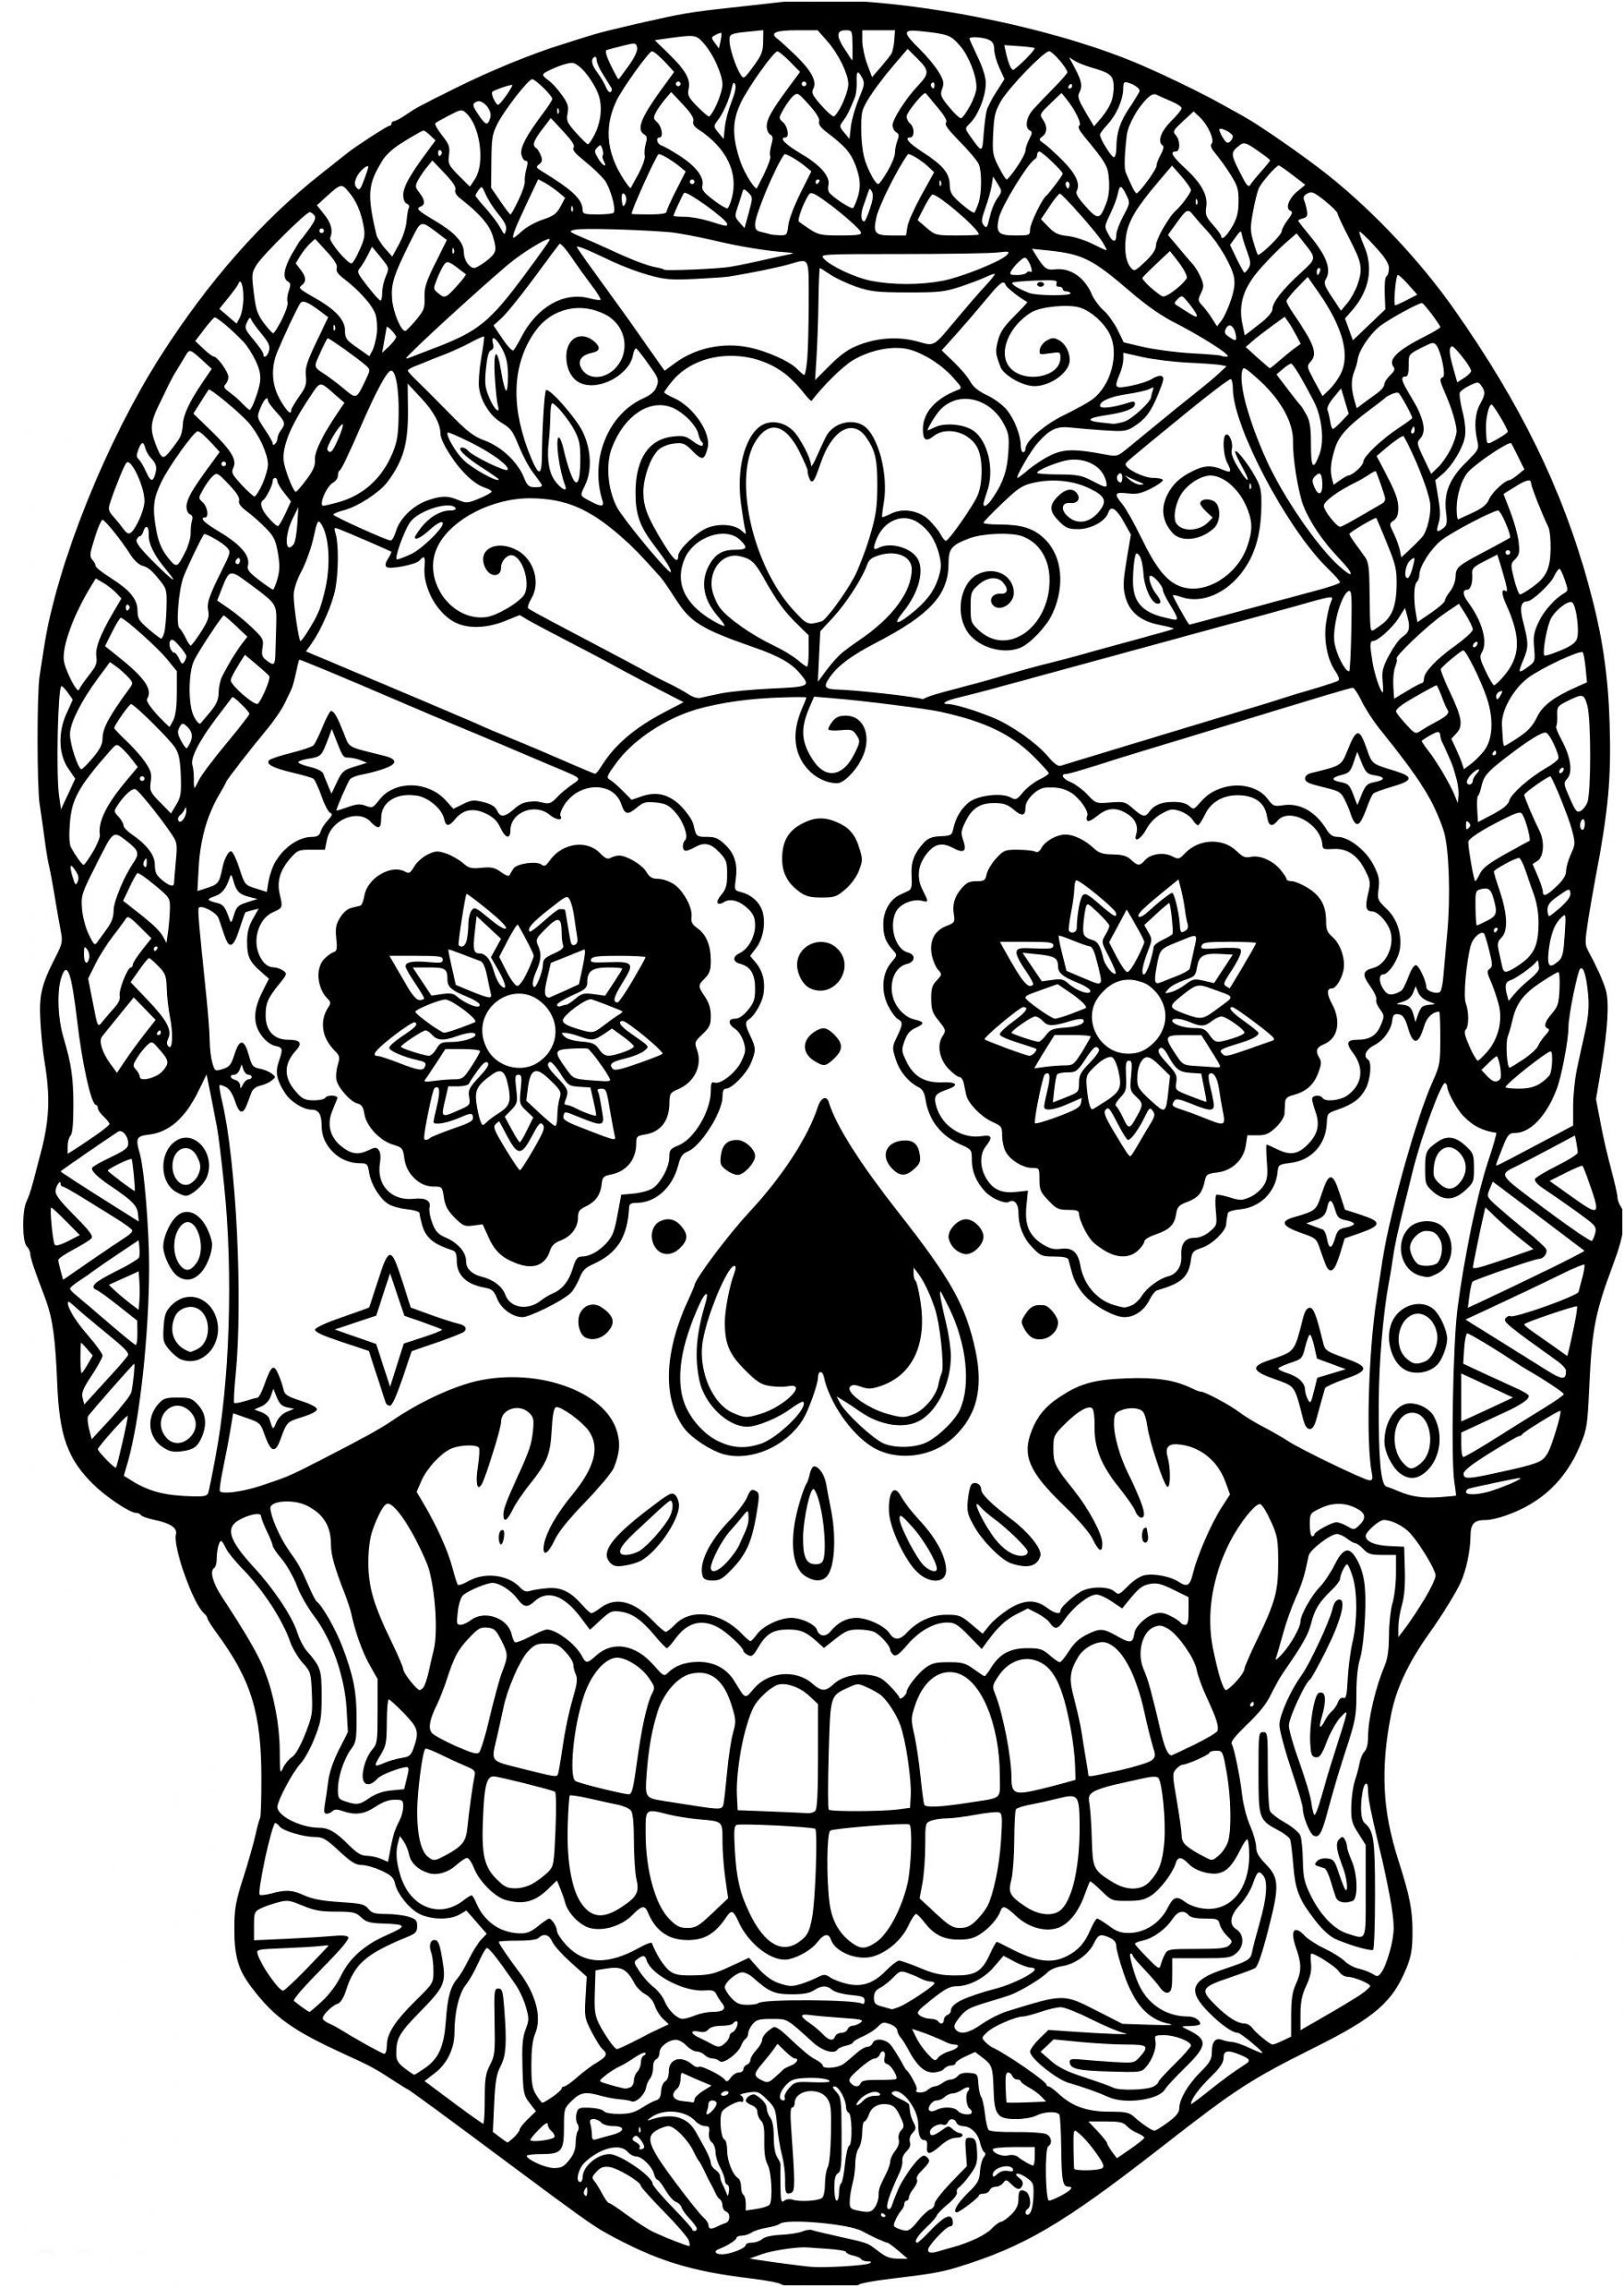 tete de mort mexicaine a colorier elegant coloriage tete de mort gratuit a imprimer libre coloriages en ligne